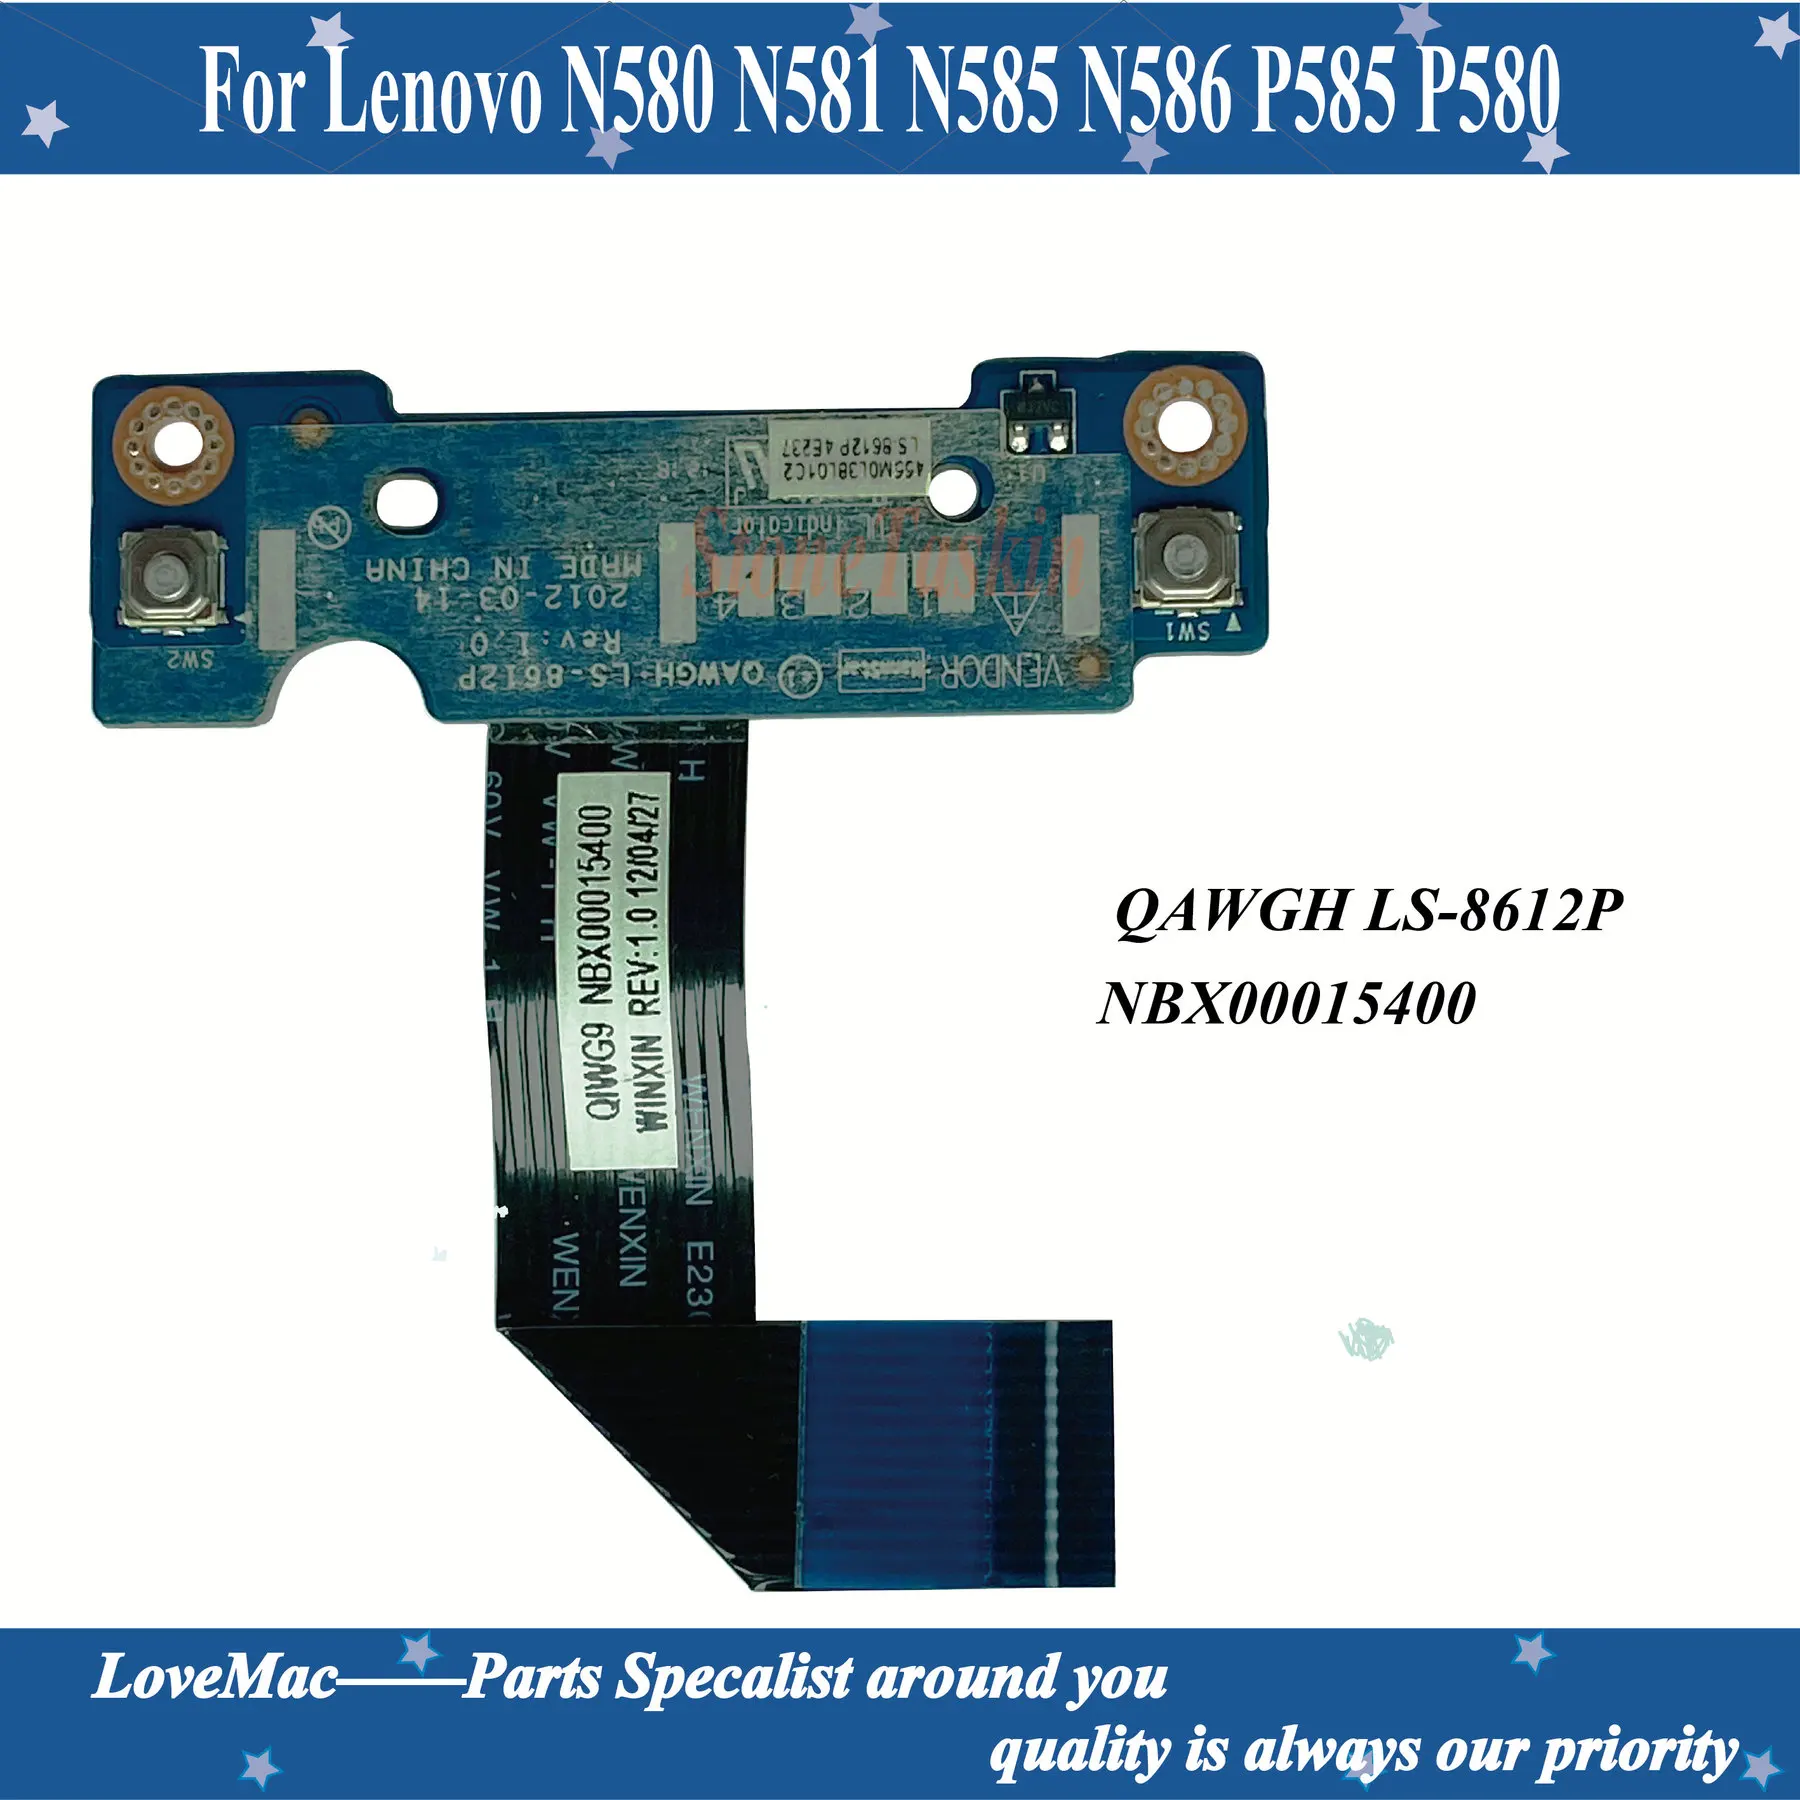 Высокое качество NBX00015400 Для Lenovo Ideapad N580 N581 N585 N586 P585 P580 Сенсорная панель Кнопка Мыши Плата LS-8612P разъем постоянного тока кабель